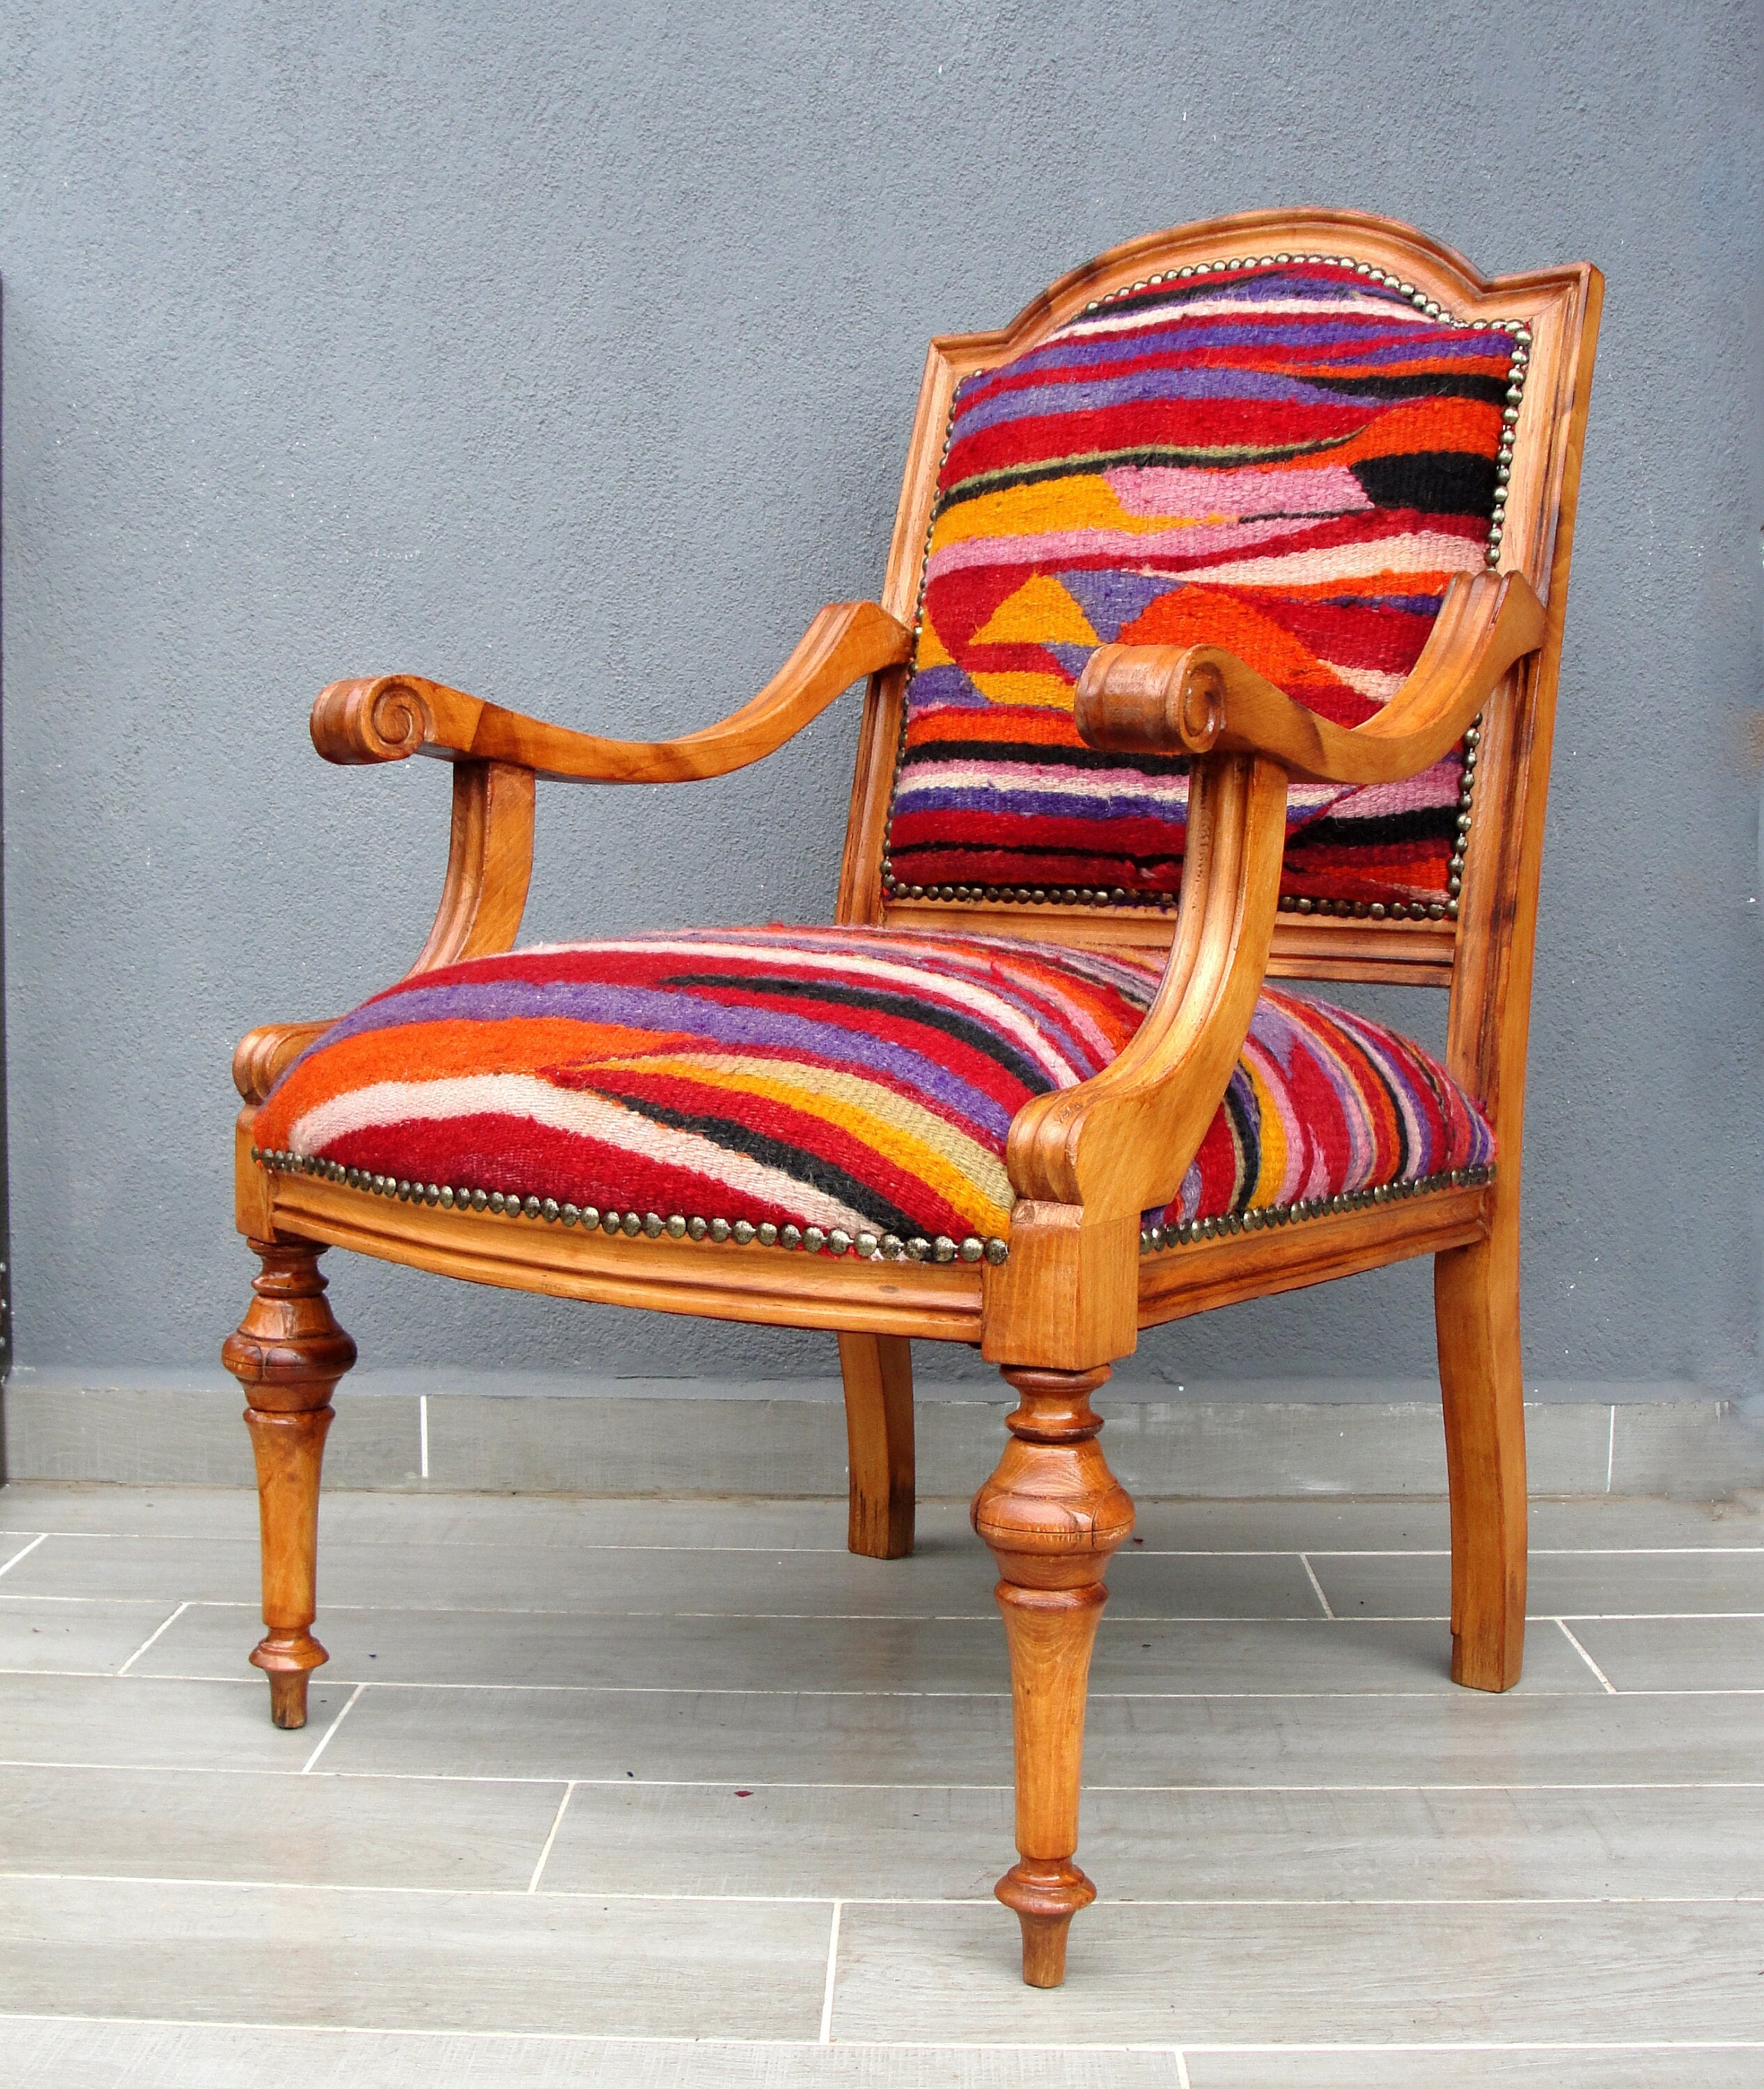 Delano Chair in Kilim Gypsy, Bright Kilim-Print Chair